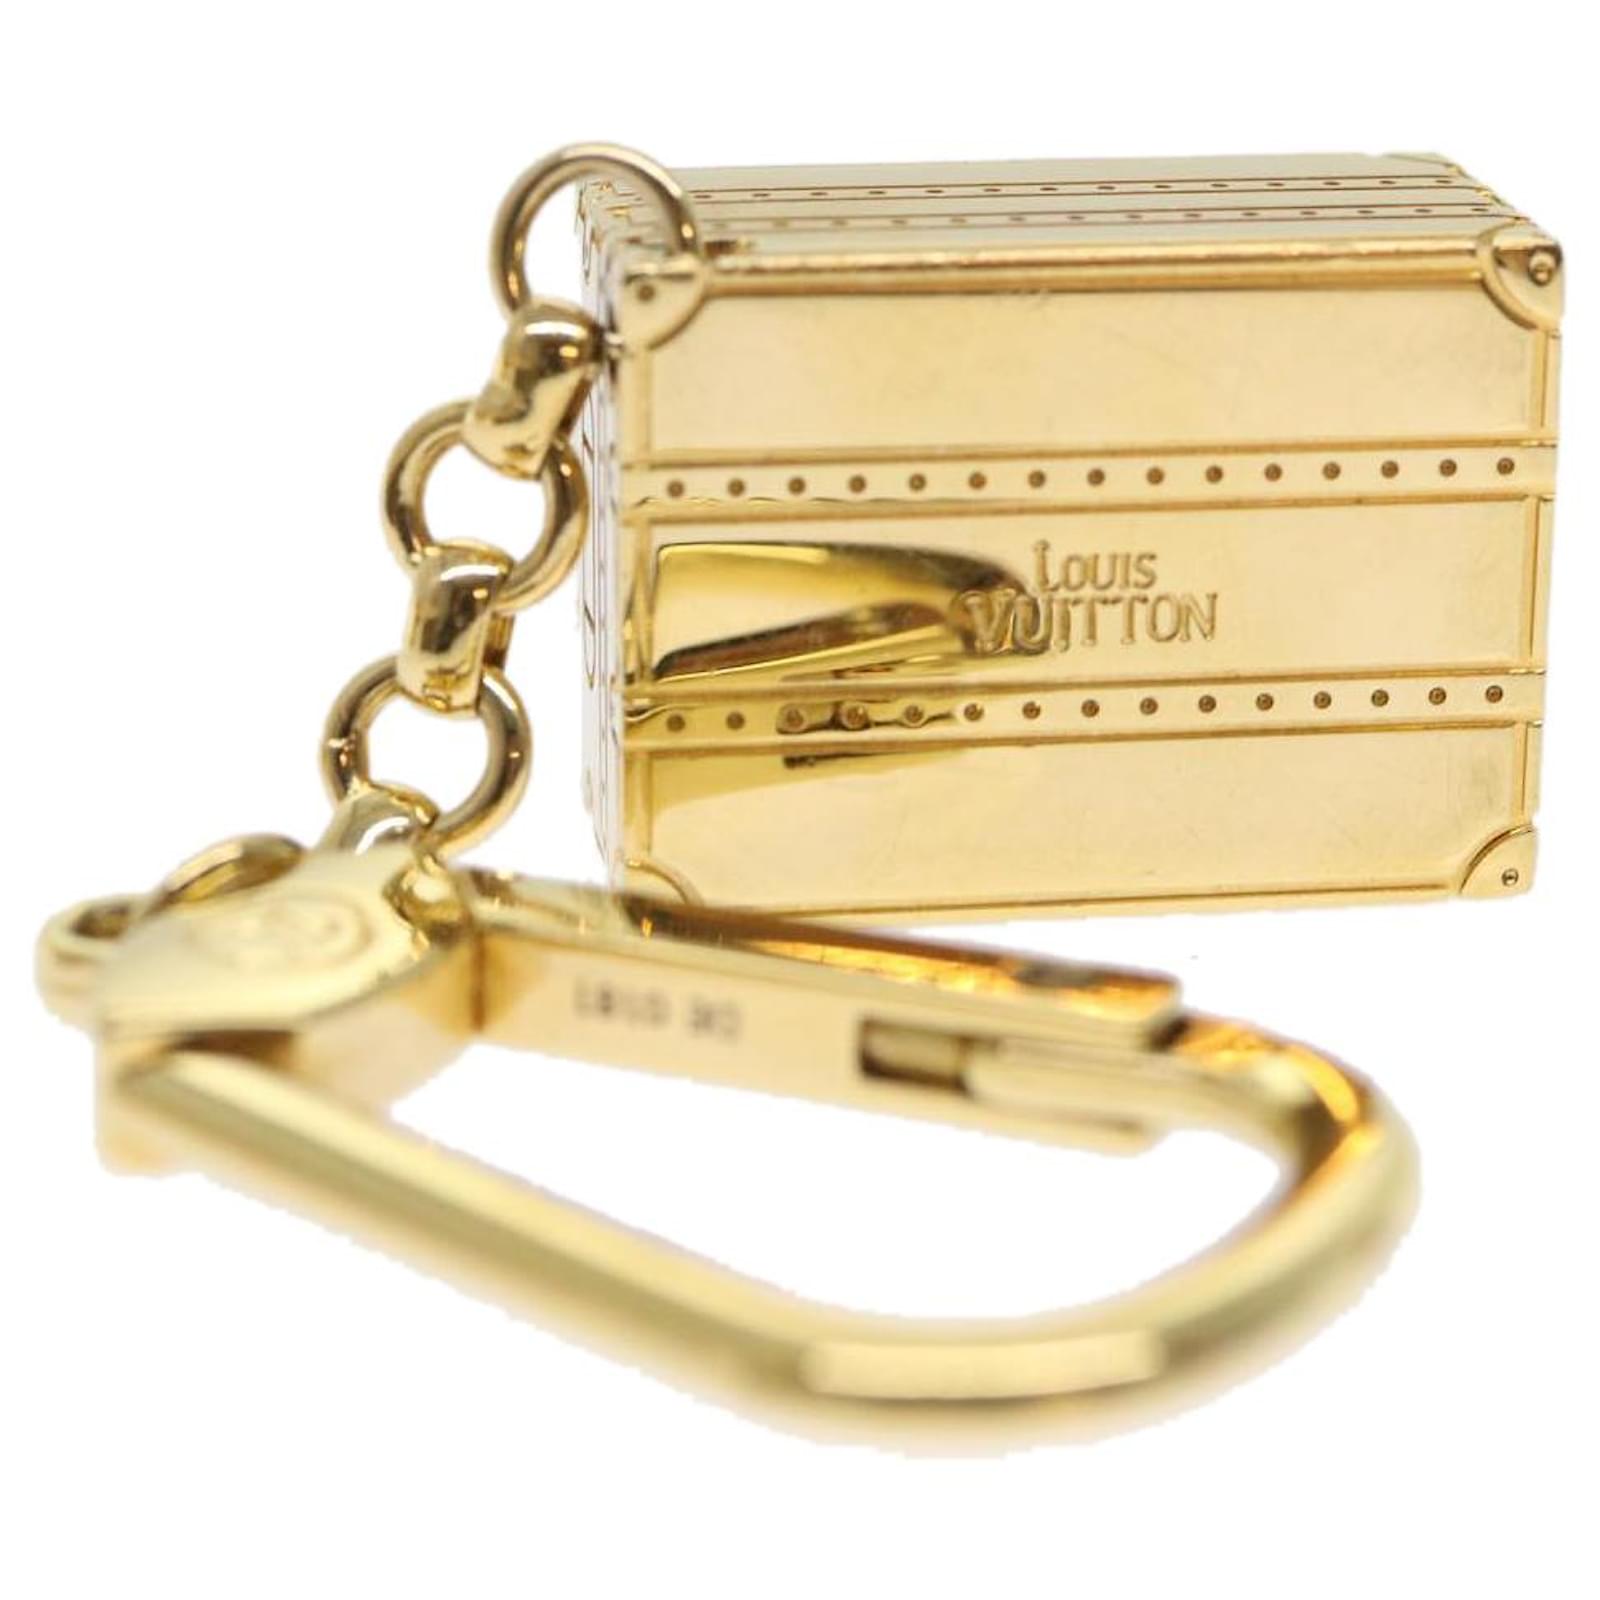 LOUIS VUITTON Porte Cles Trunk Key Holder Gold Tone M66458 LV Auth